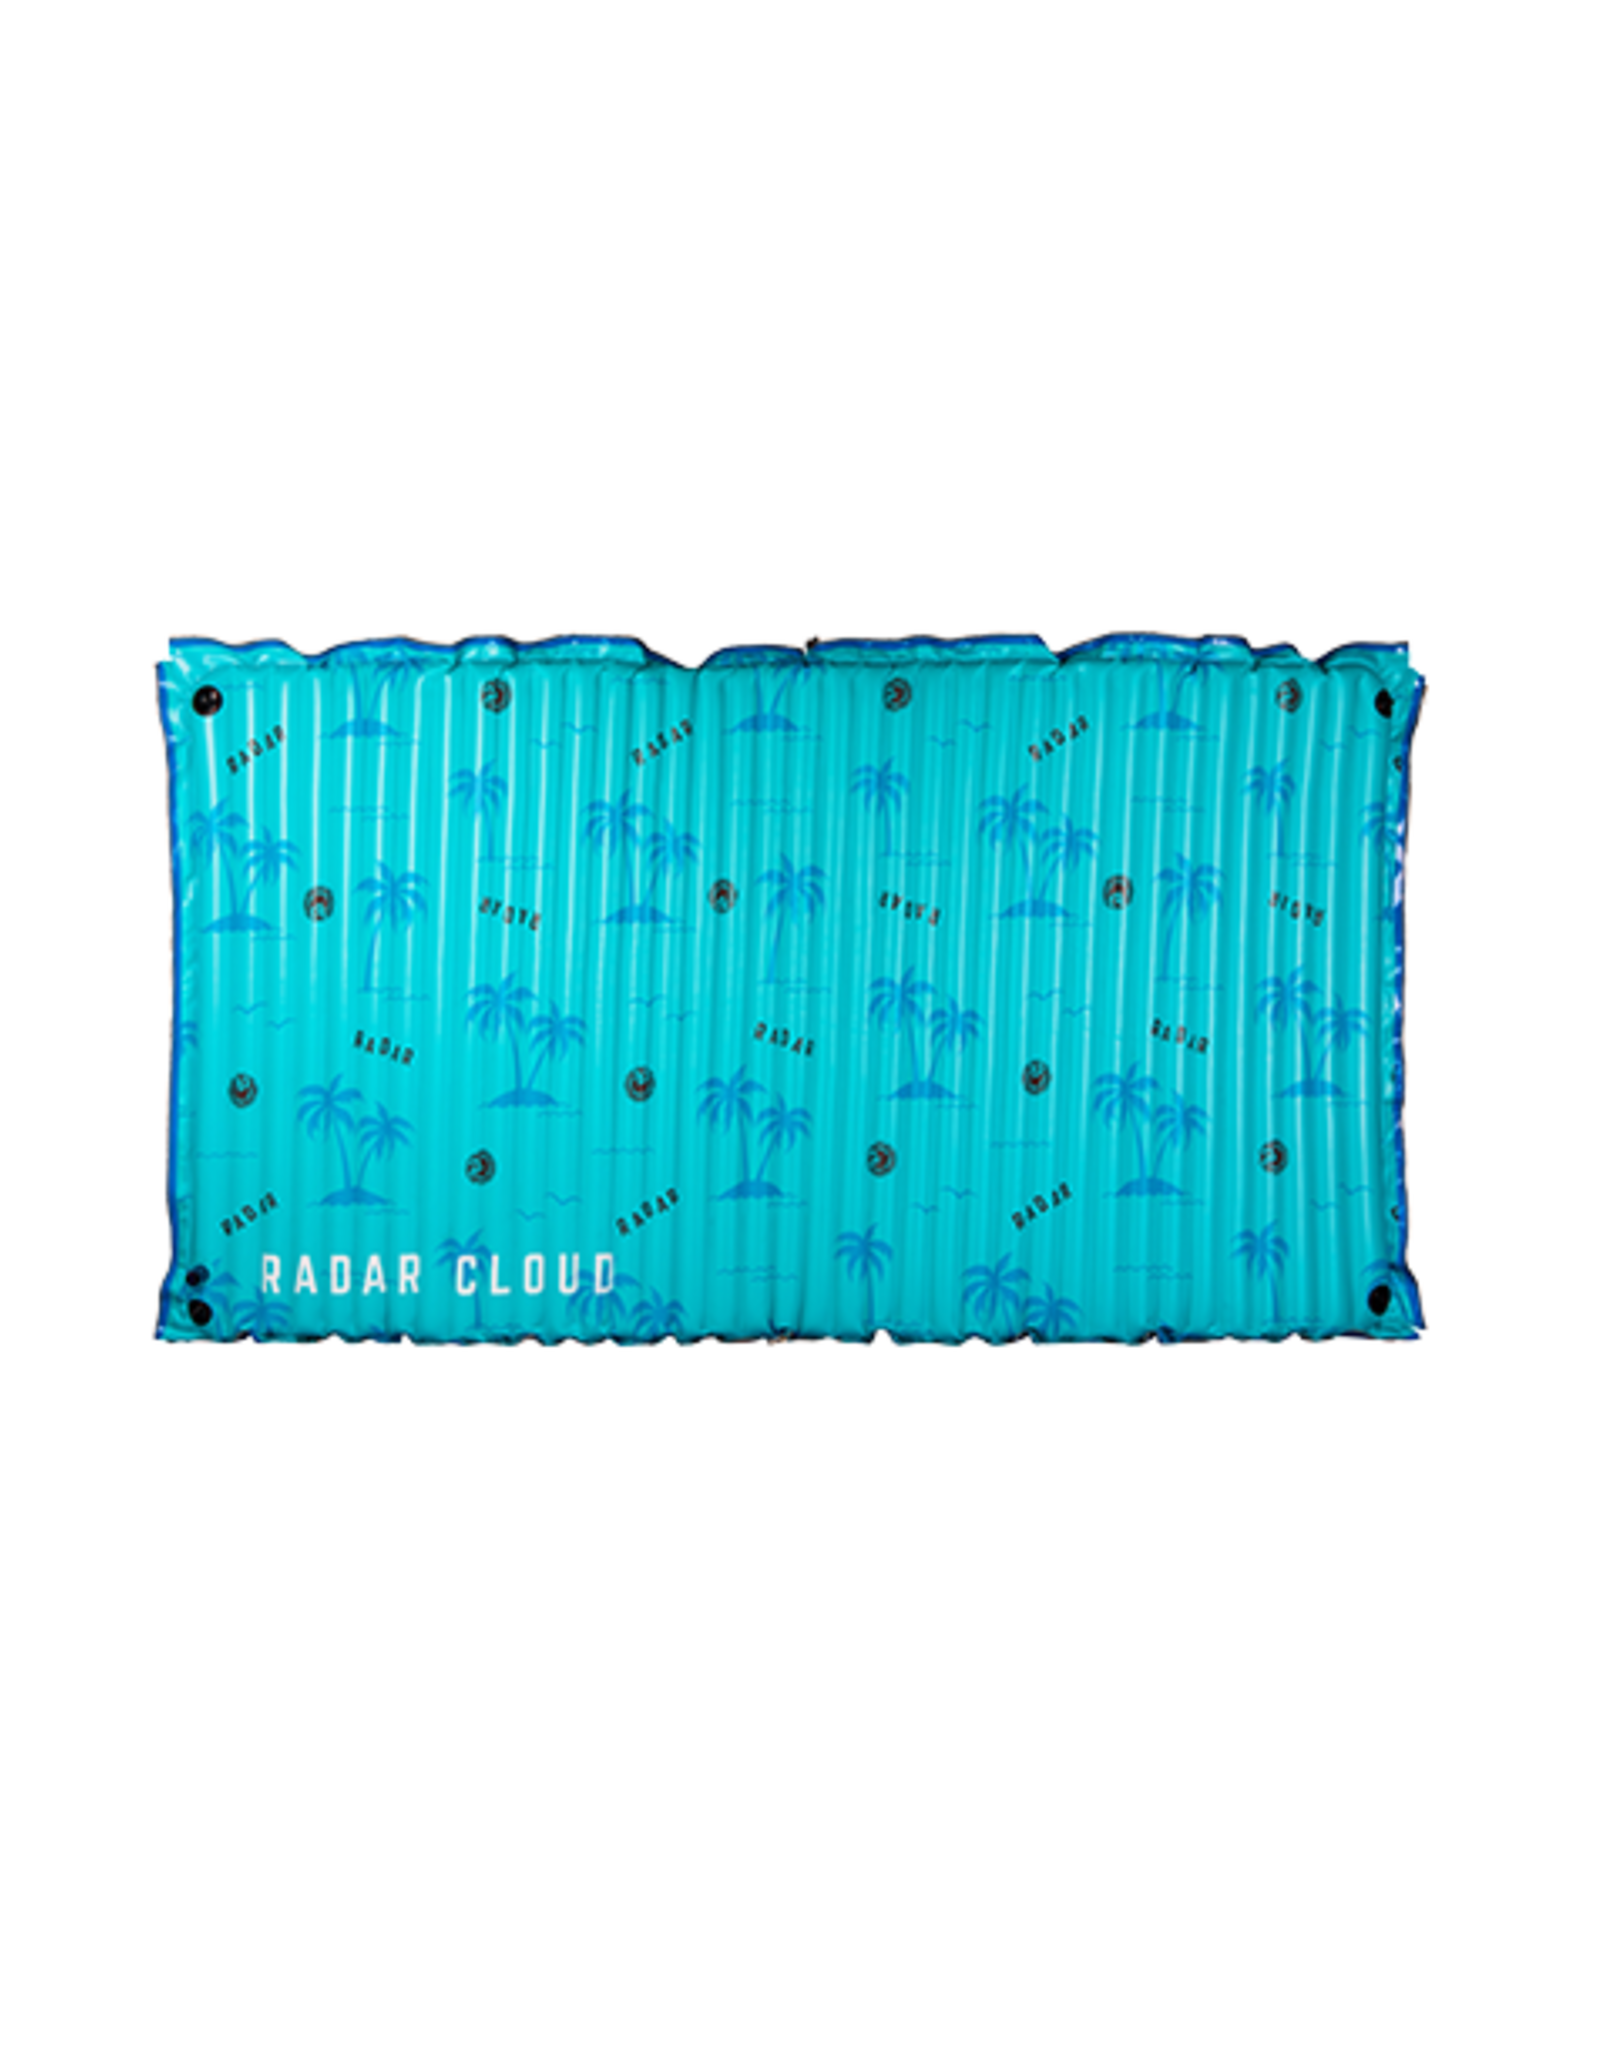 Radar Cloud Water Mat - Blue Palms - 5' x 10